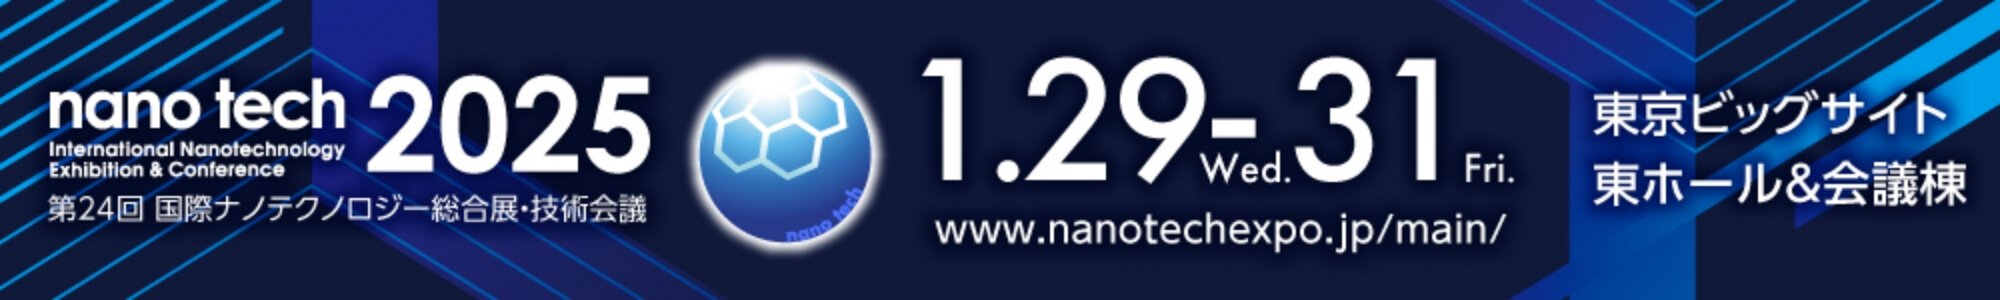 nano tech 2025 1000×150